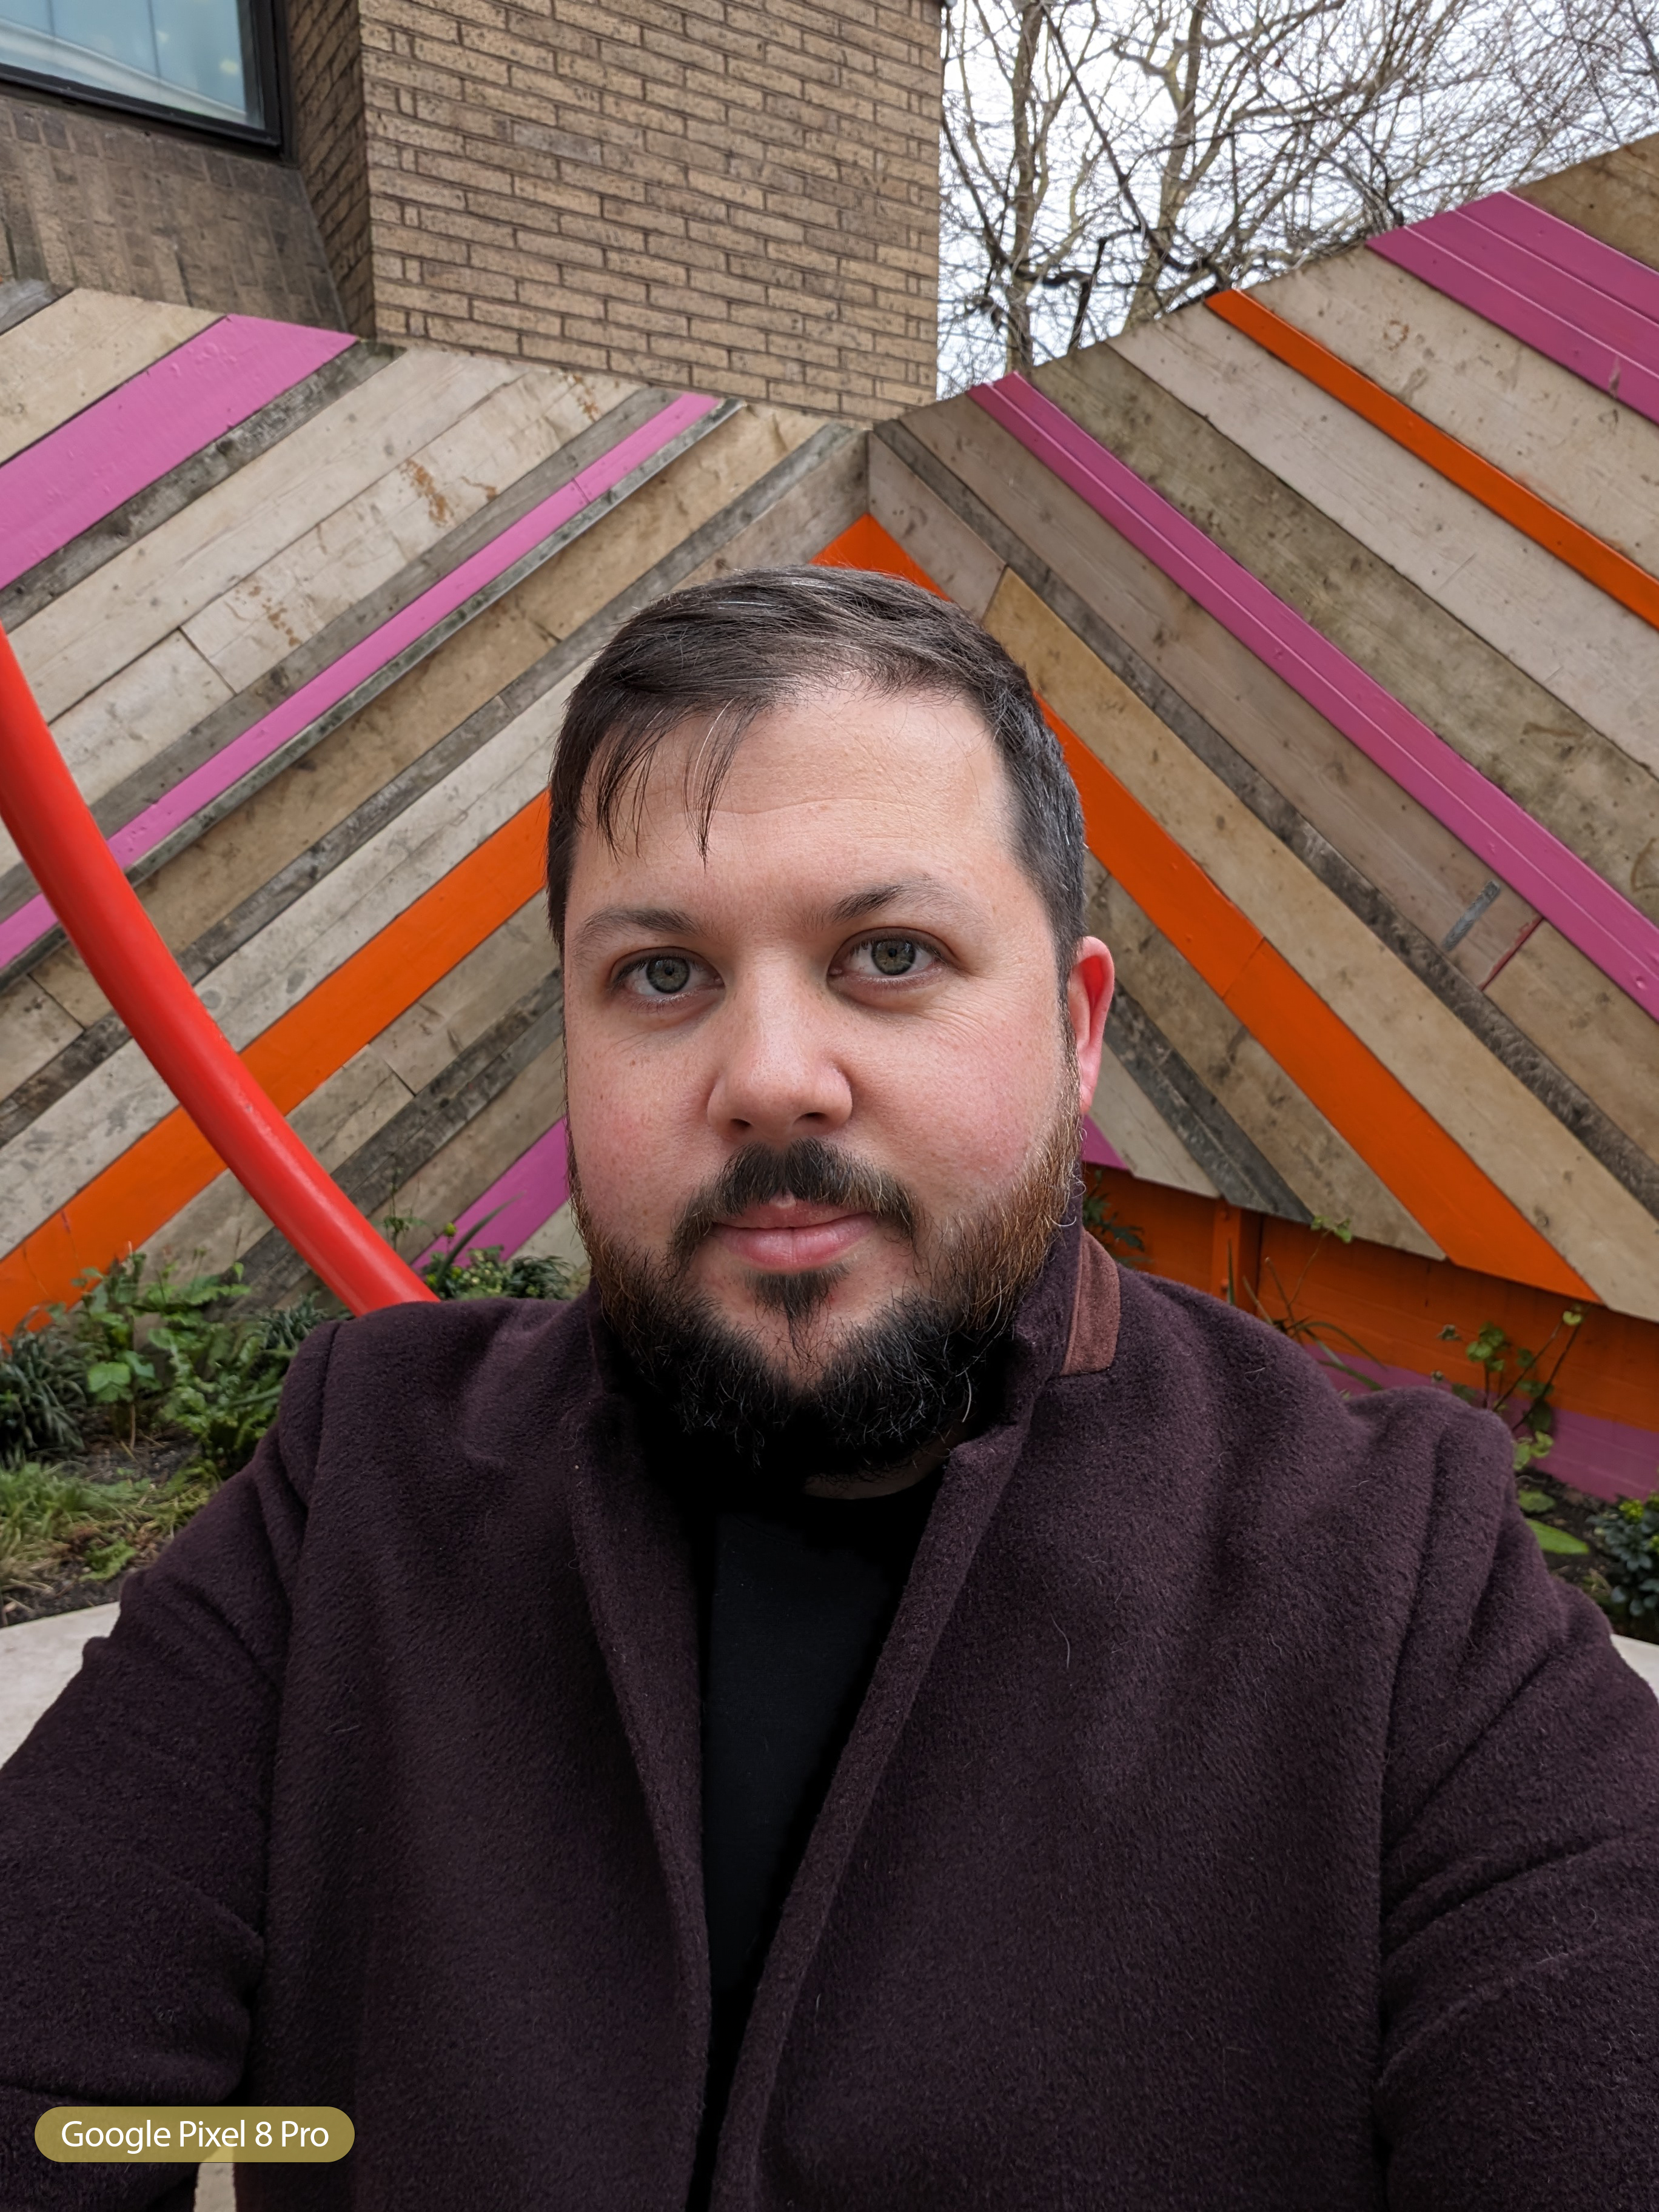 Google Pixel 8 Pro Selfie Portrait Mode Off Toddy